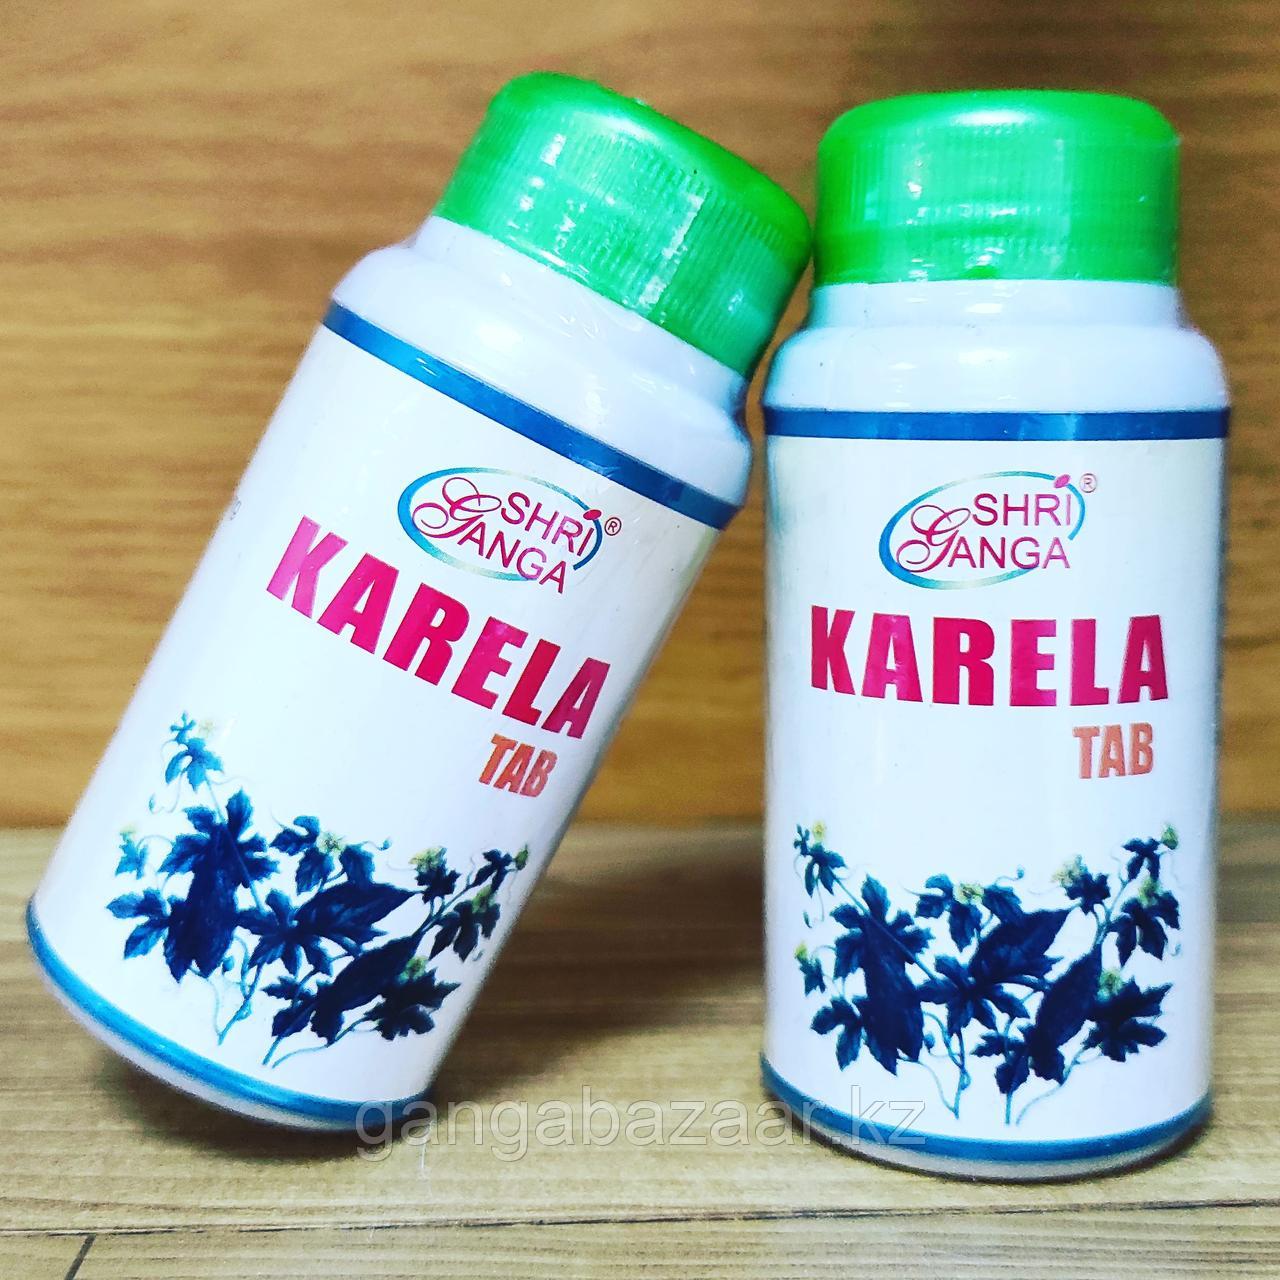 Карела Шри Ганга (Karela Shri Ganga) - от диабета, для регуляции сахара в крови, 120 таб